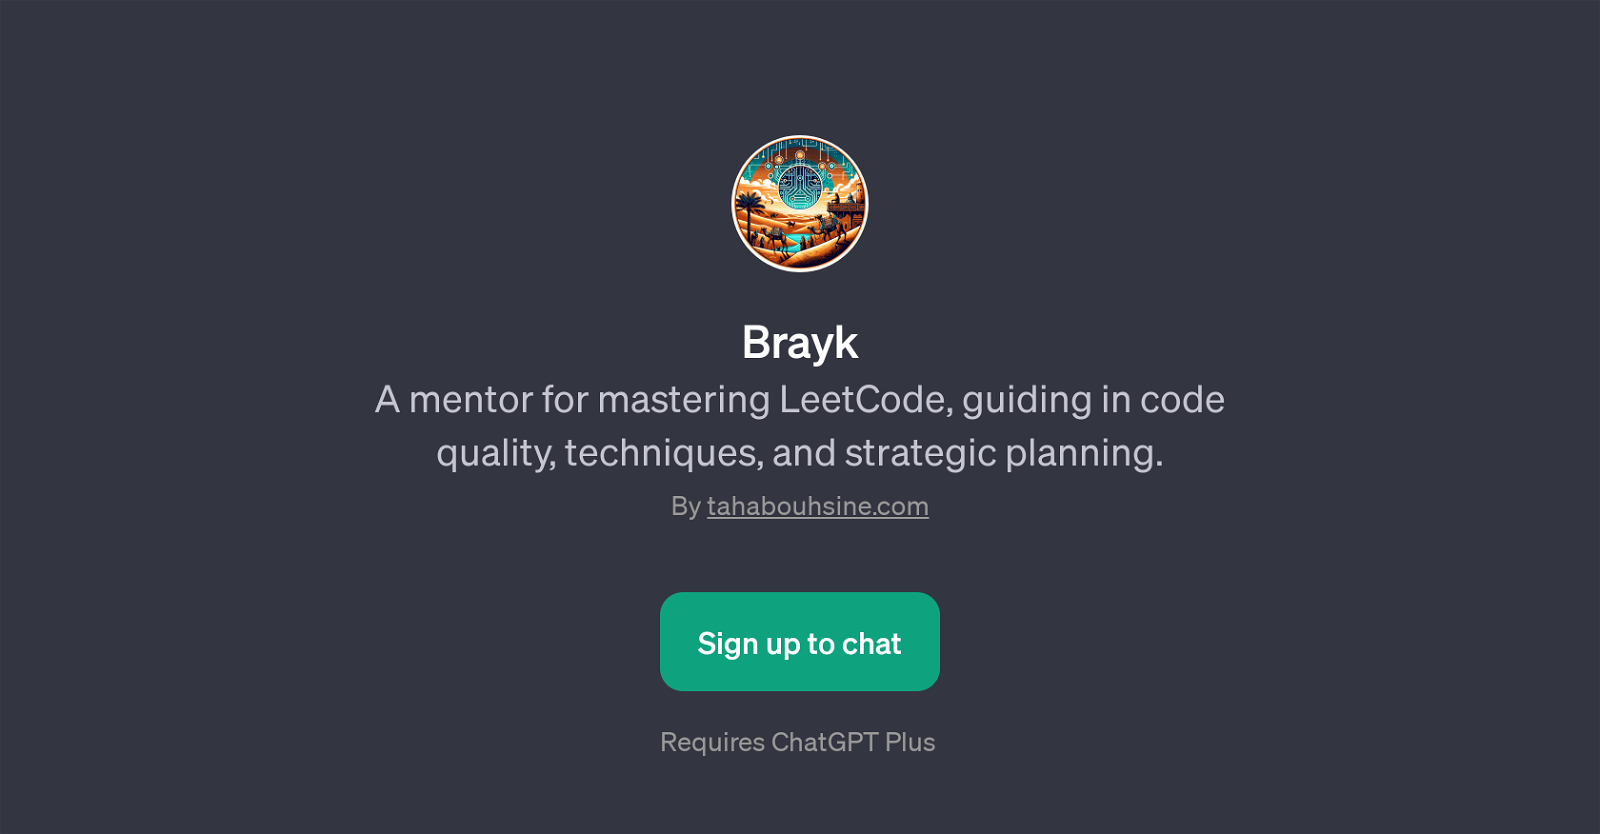 Brayk website